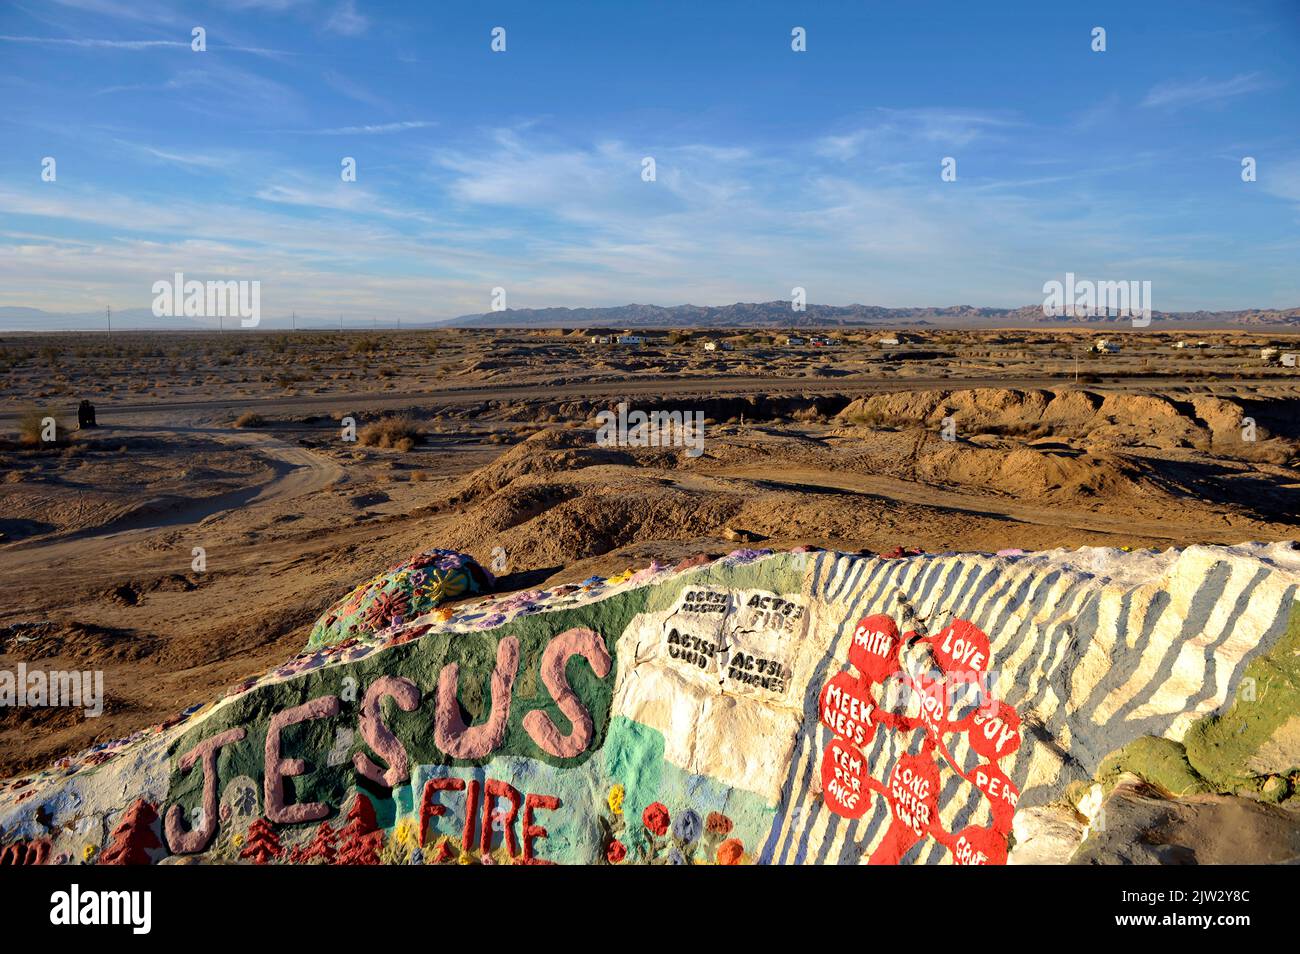 Vista della montagna di salvezza, nell'area del deserto della California della contea imperiale, a nord di Calipatria, a nord-est del Niland. Foto Stock